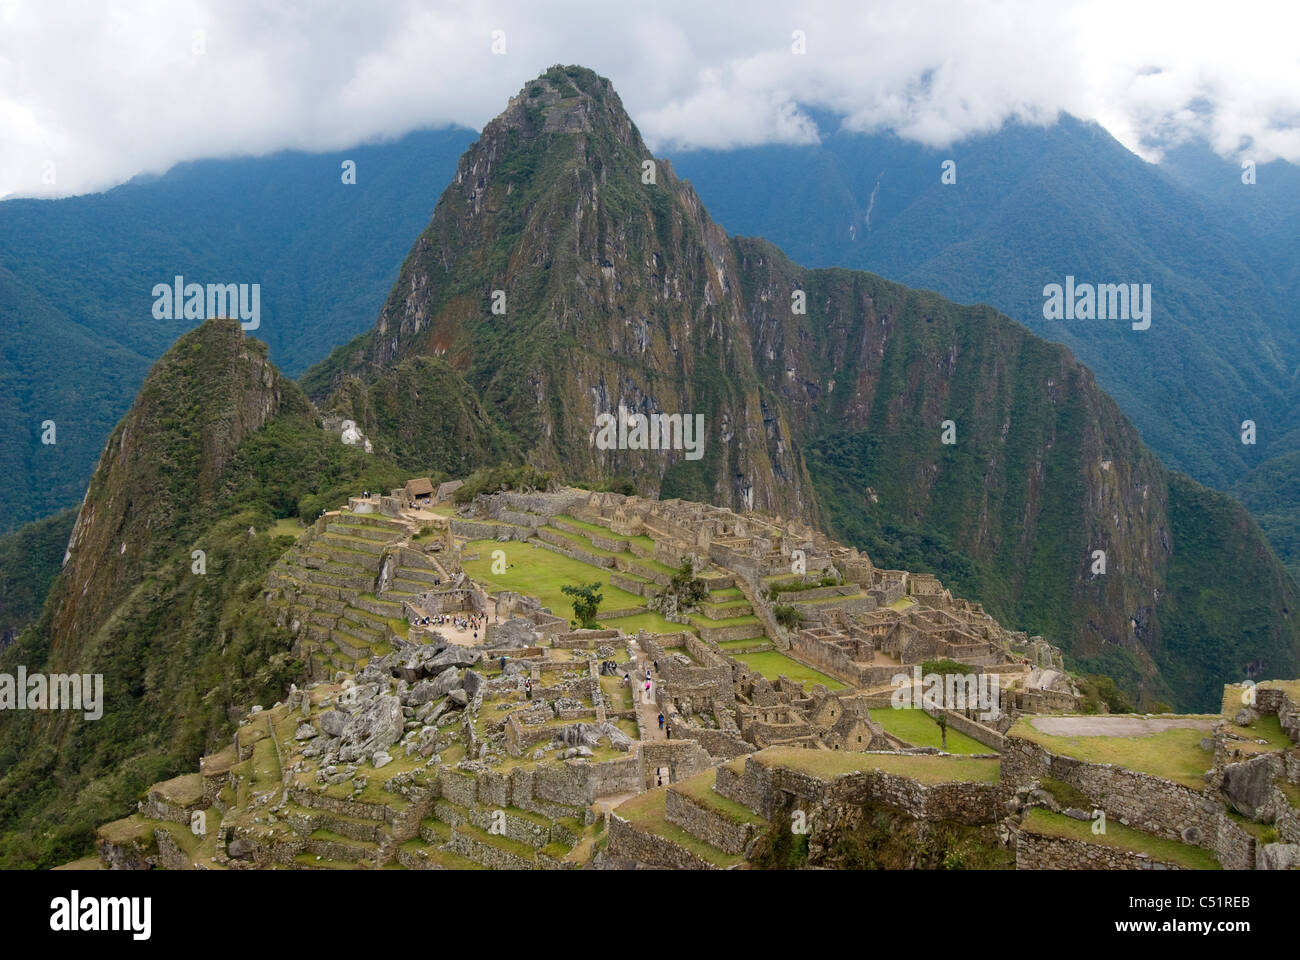 Machu Picchu ruins in the Peruvian Andes Stock Photo